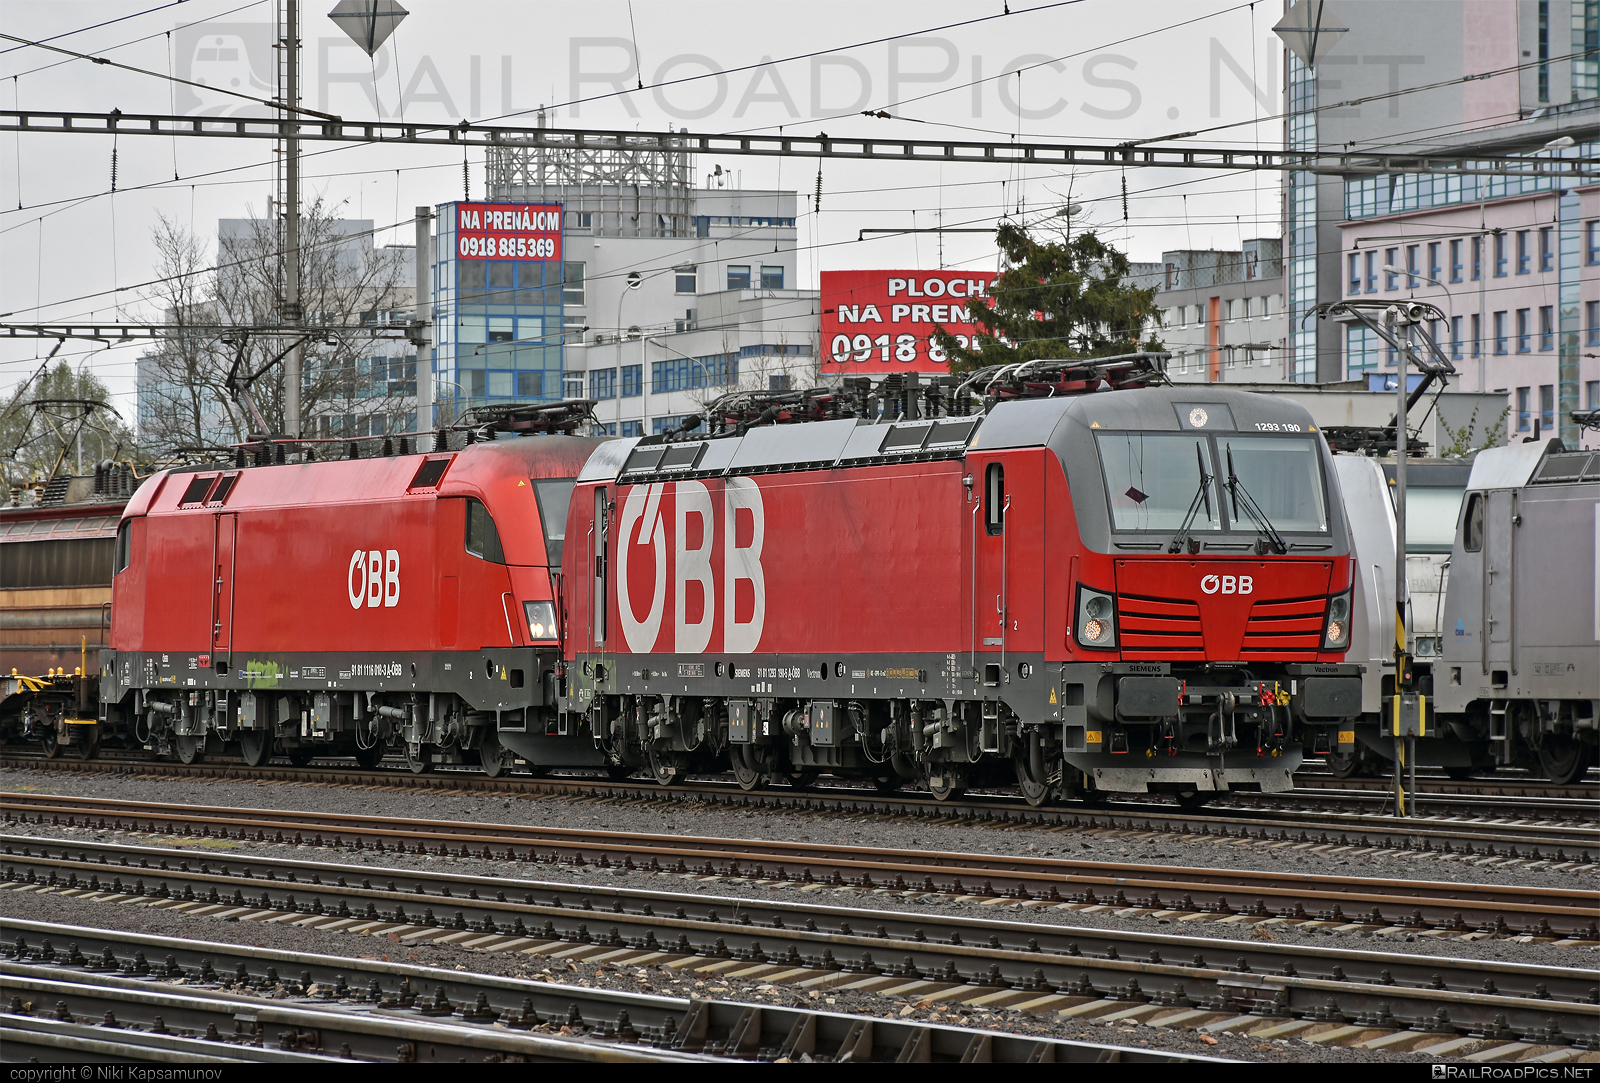 Siemens Vectron MS - 1293 190 operated by Rail Cargo Austria AG #obb #osterreichischebundesbahnen #rcw #siemens #siemensvectron #siemensvectronms #vectron #vectronms